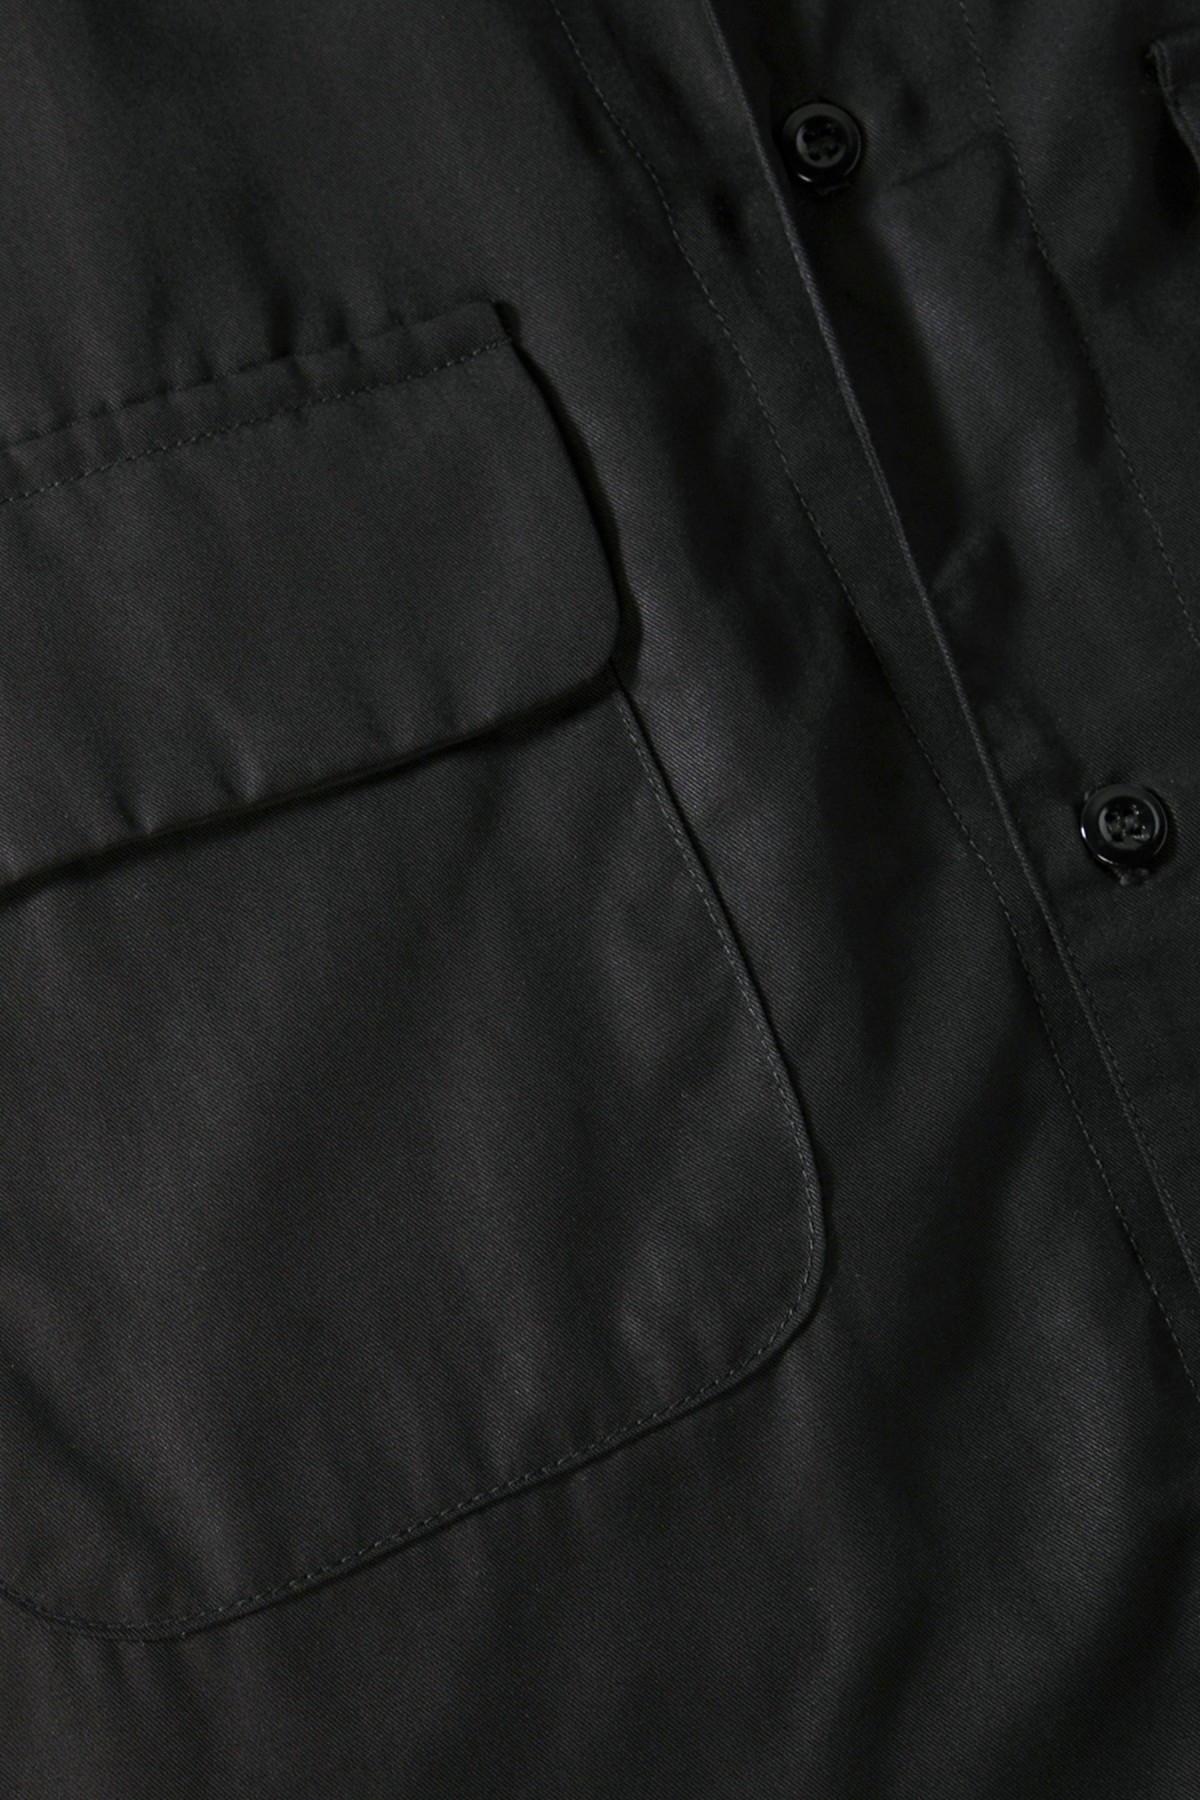 Monitaly 50'S Milano Shirt S/S in Tencel Black